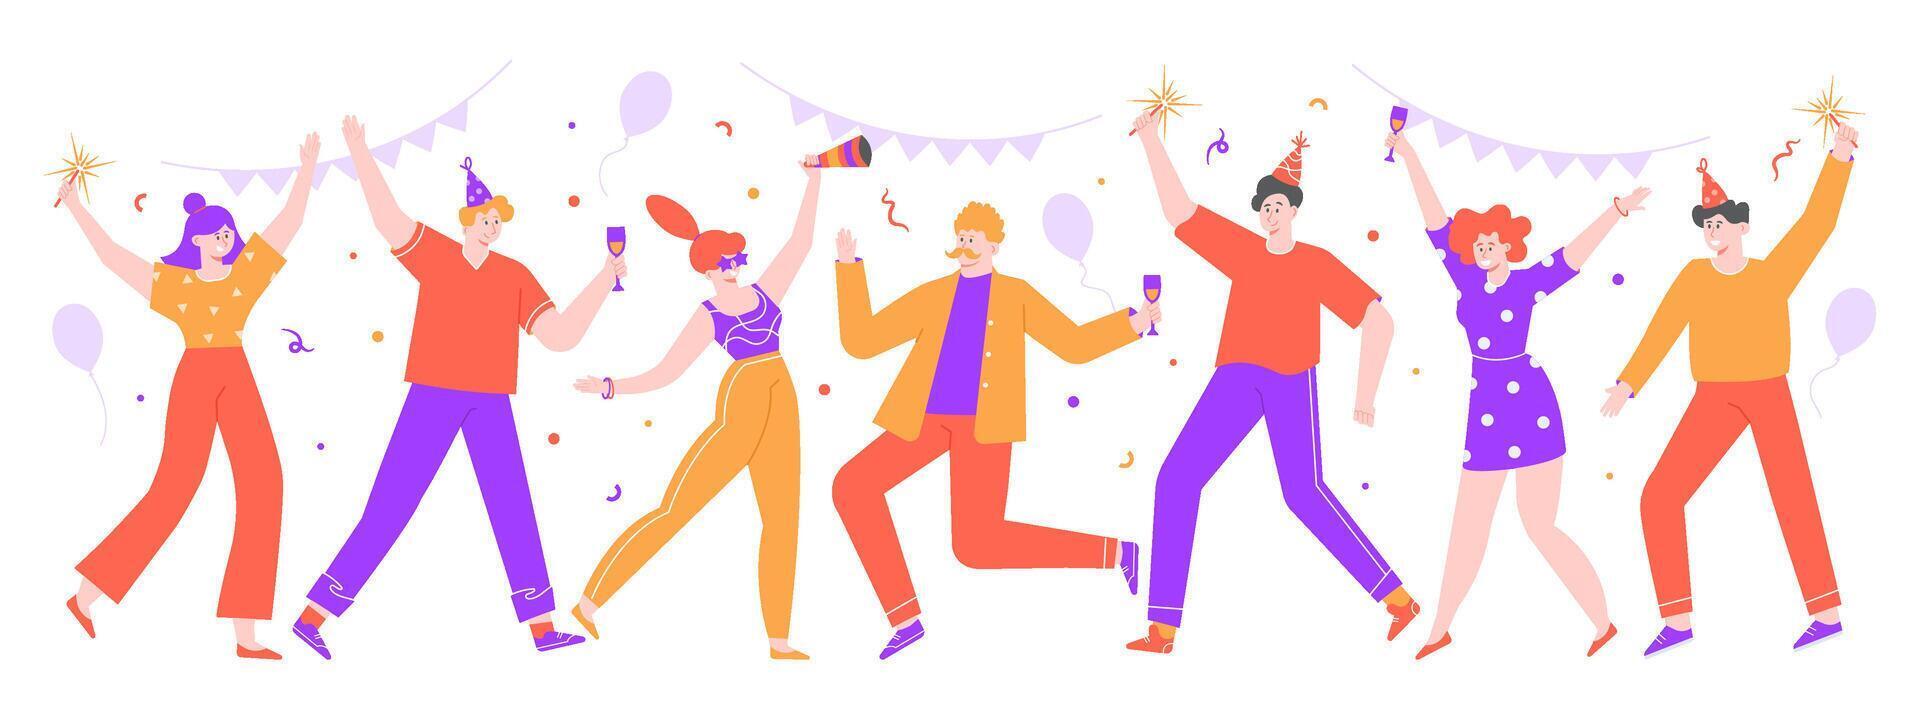 personas celebrando. contento celebracion fiesta, alegre mujer y hombres celebrando juntos con globos y papel picado. danza celebracion fiesta vector aislado ilustración. aniversario, festivo evento